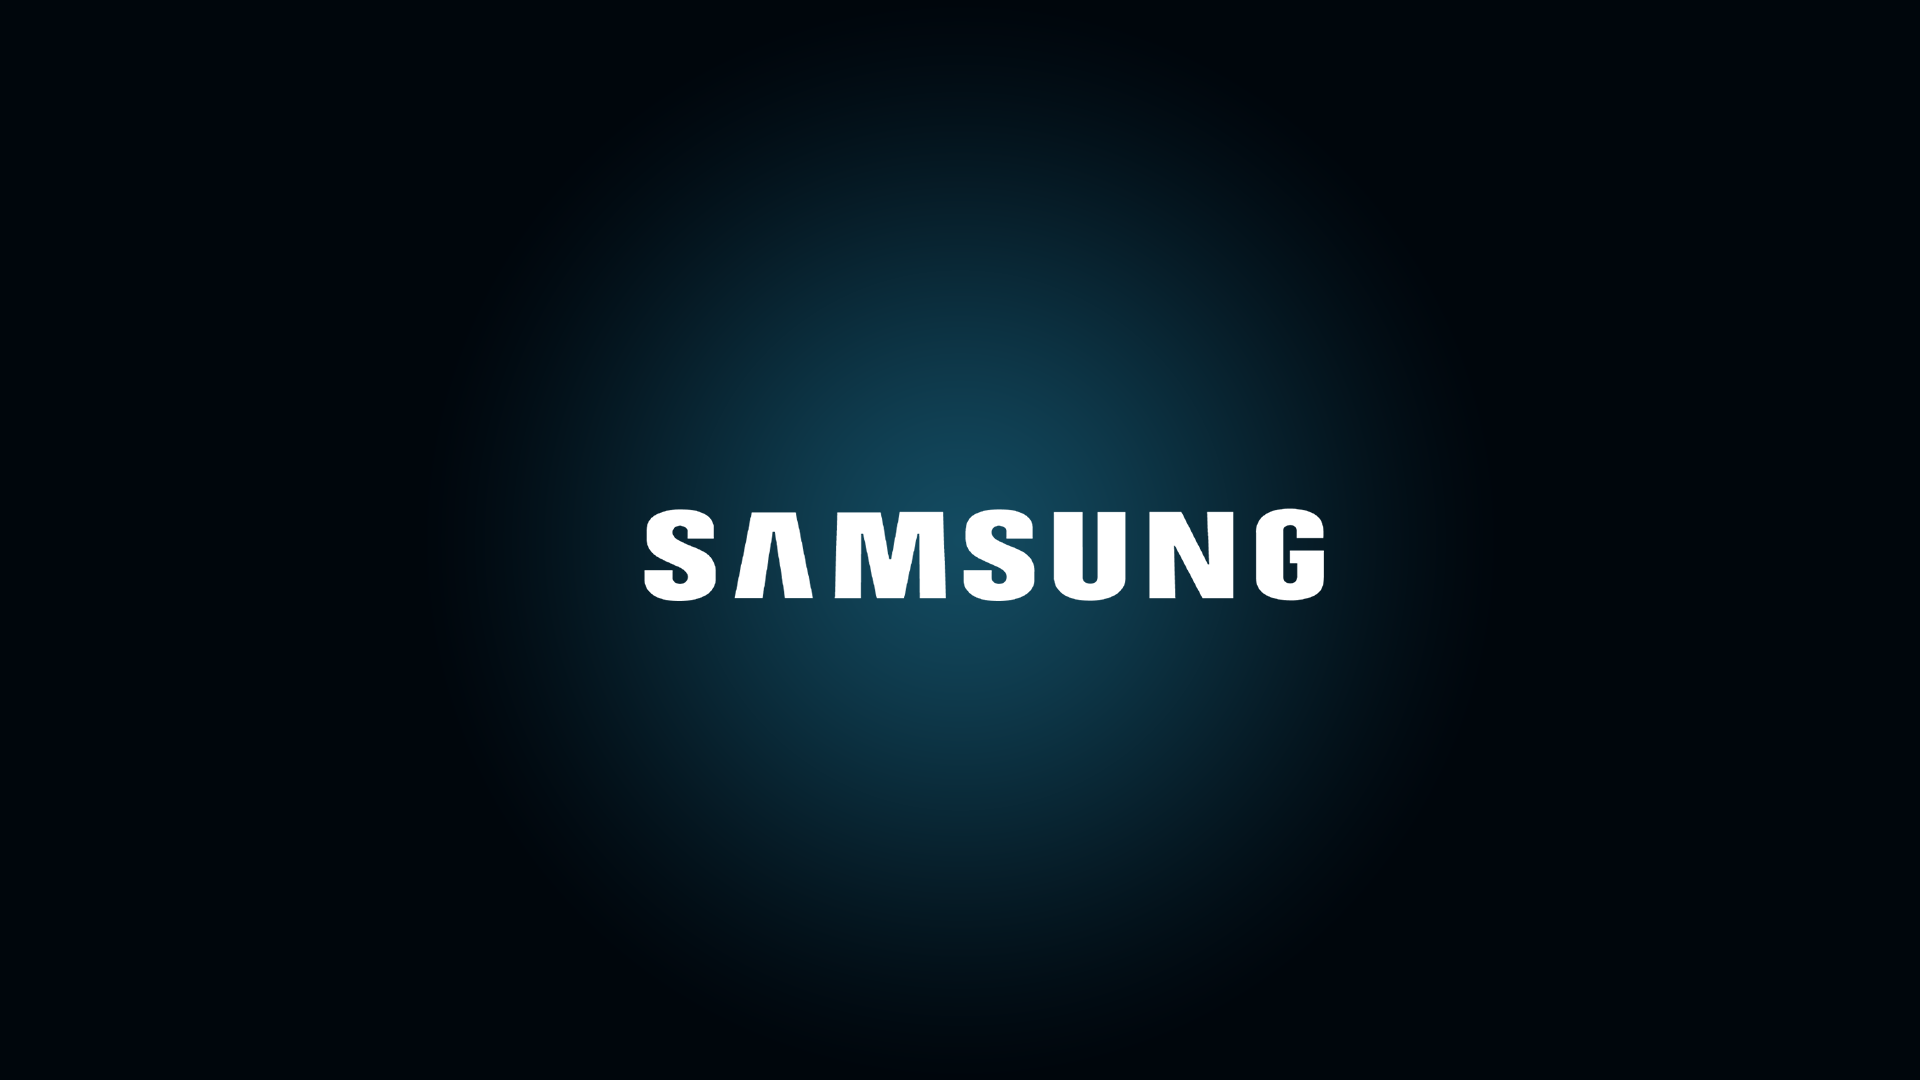 Bạn đang tìm kiếm những hình nền Samsung đẹp để cập nhật cho điện thoại của mình? Với các thiết kế tuyệt đẹp và đa dạng, hình nền Samsung sẽ đem lại cho bạn nhiều lựa chọn hấp dẫn và độc đáo. Hãy tham khảo ngay các mẫu hình nền Samsung để tìm kiếm cho mình một bộ sưu tập đầy đủ.